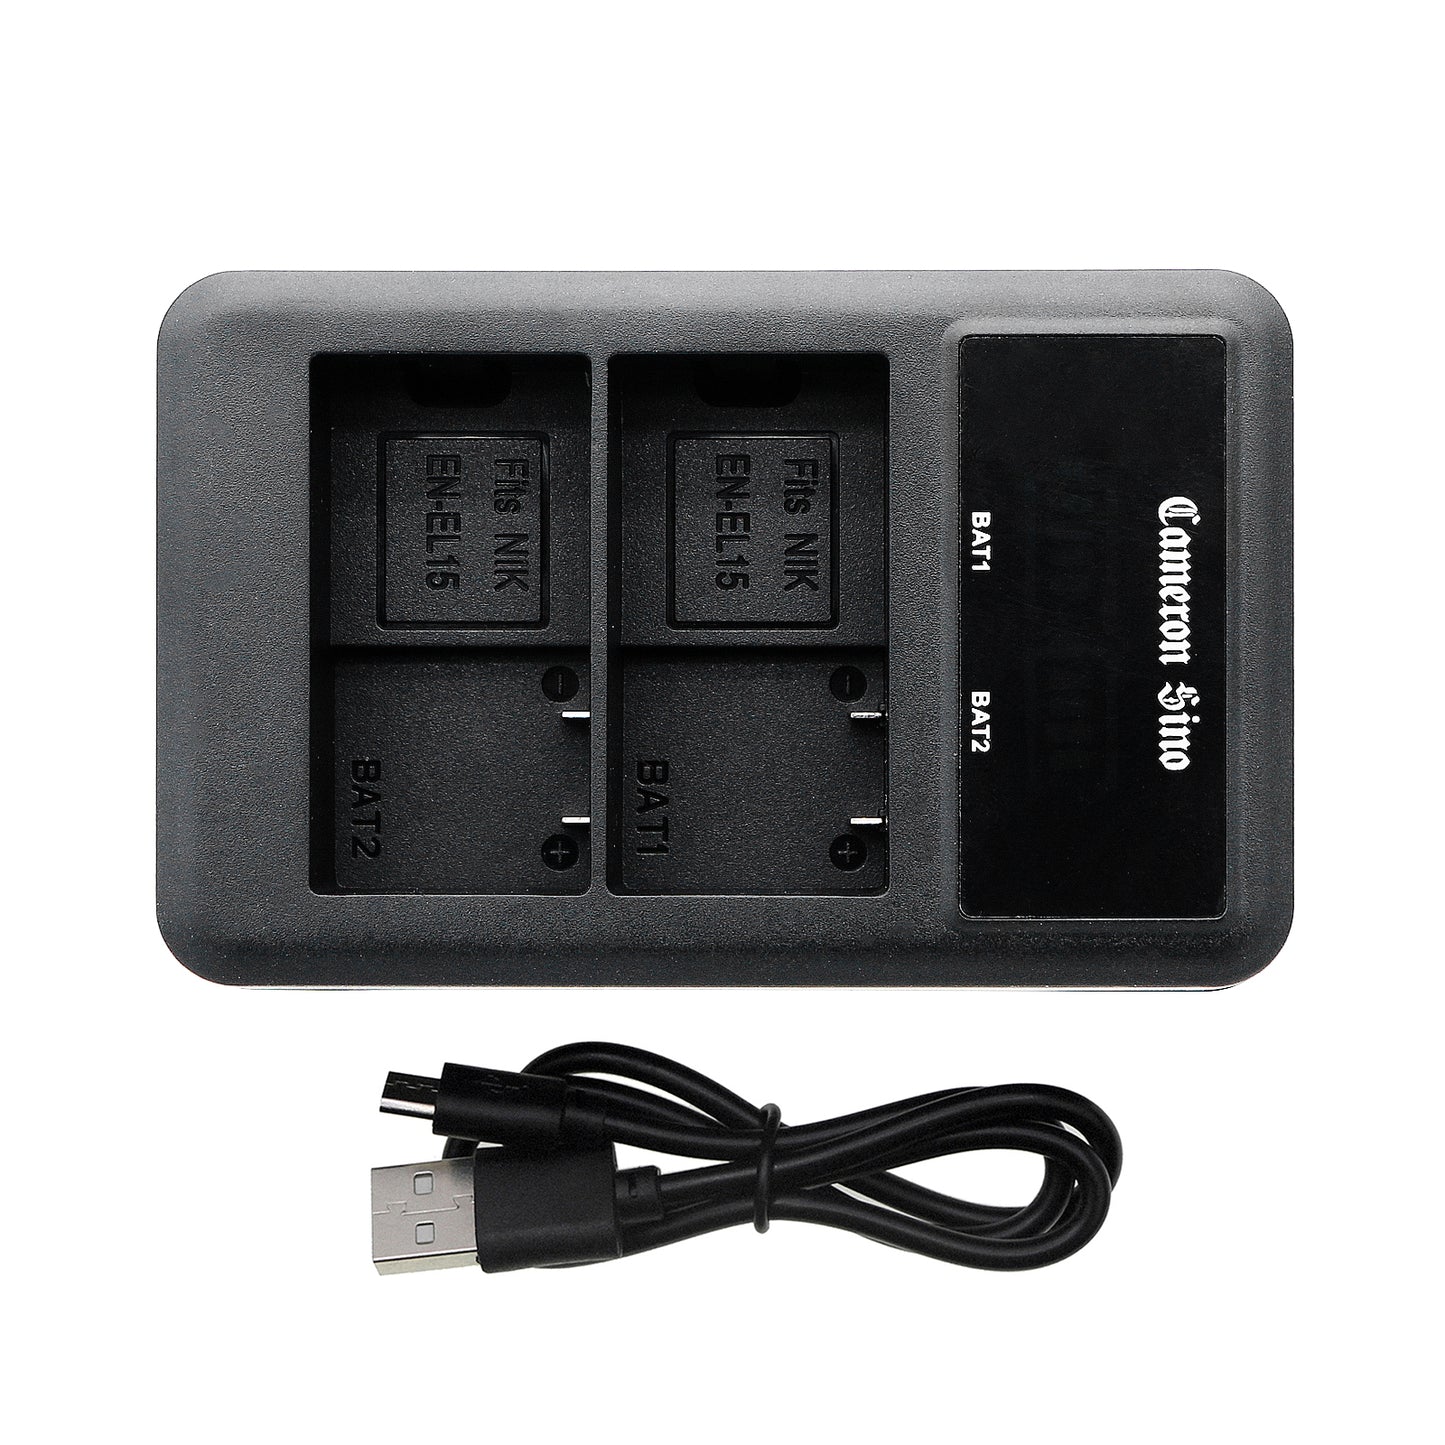 LCD USB Dual charger for EN-EL15, EN-EL15A, EN-EL15B, EL-EL15C